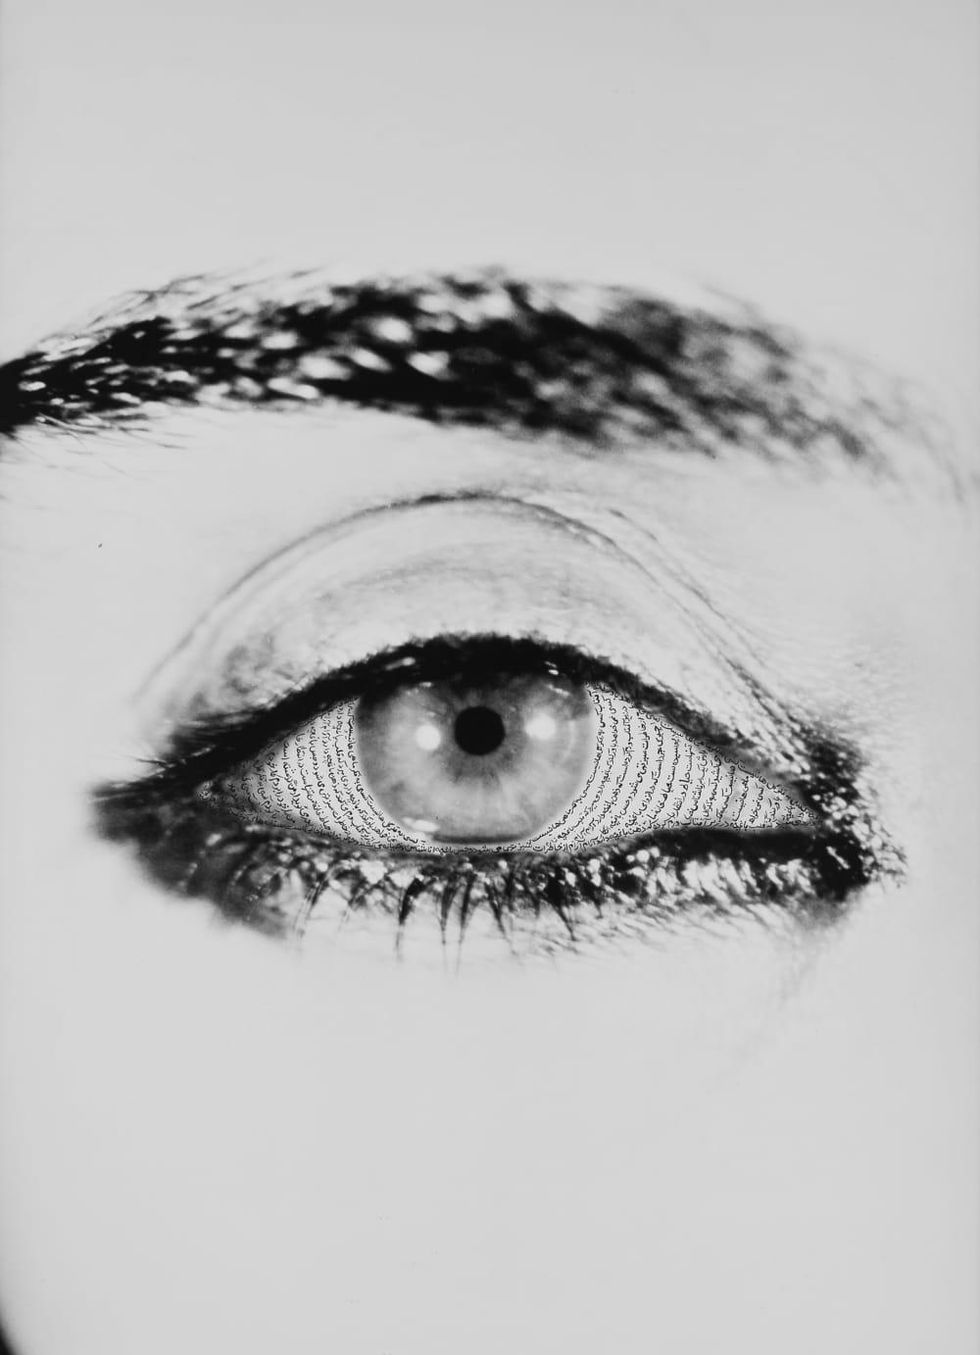 Shirin Neshat, "Offered Eyes"